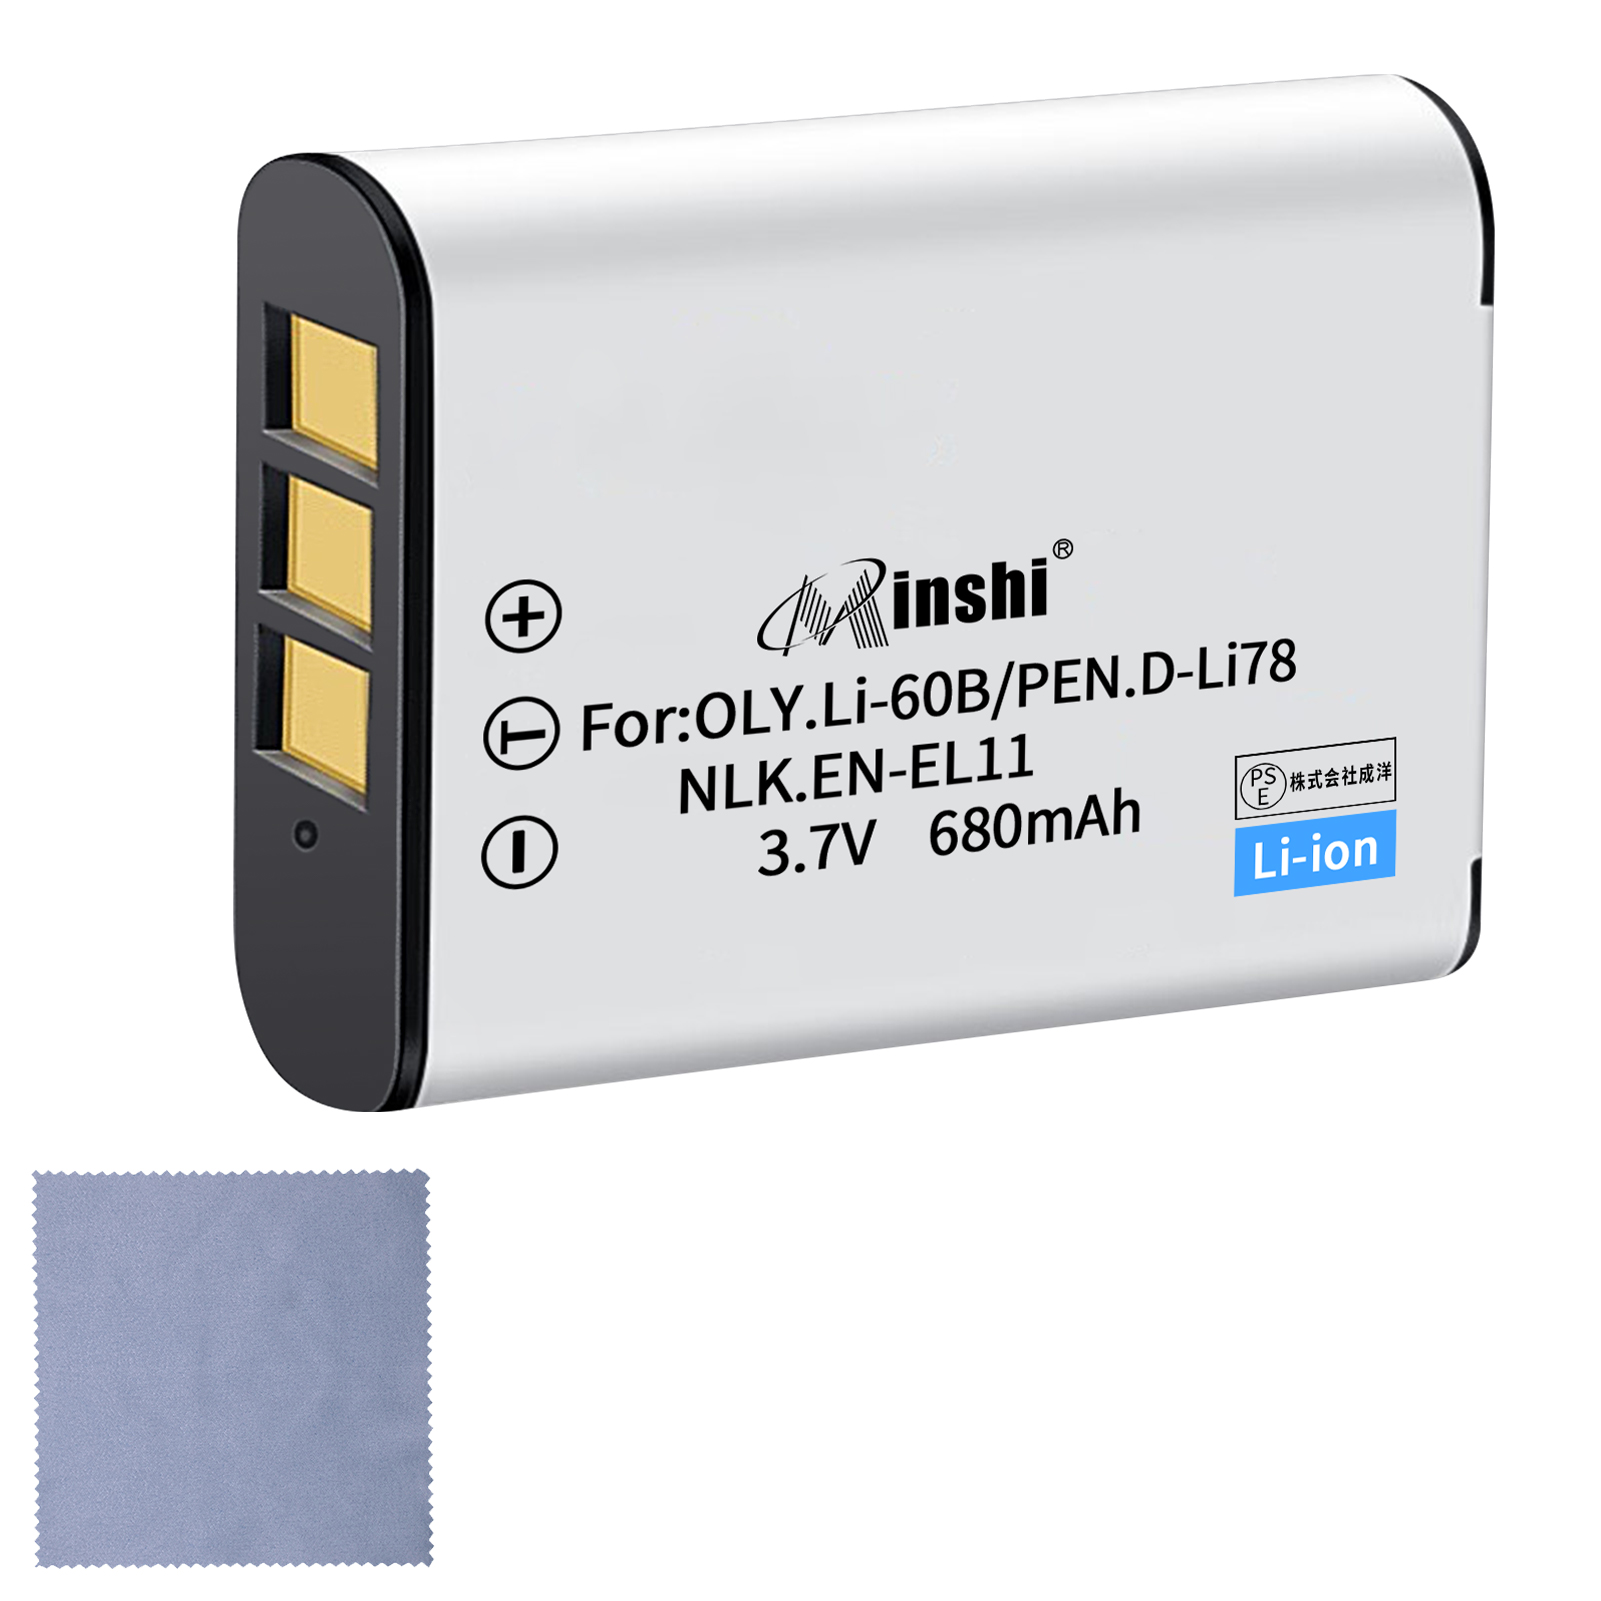 【クロス付き】minshi NIKON Optio W80【680mAh 3.7V】PSE認定済 高品質交換用バッテリー オリジナル充電器との互換性がない